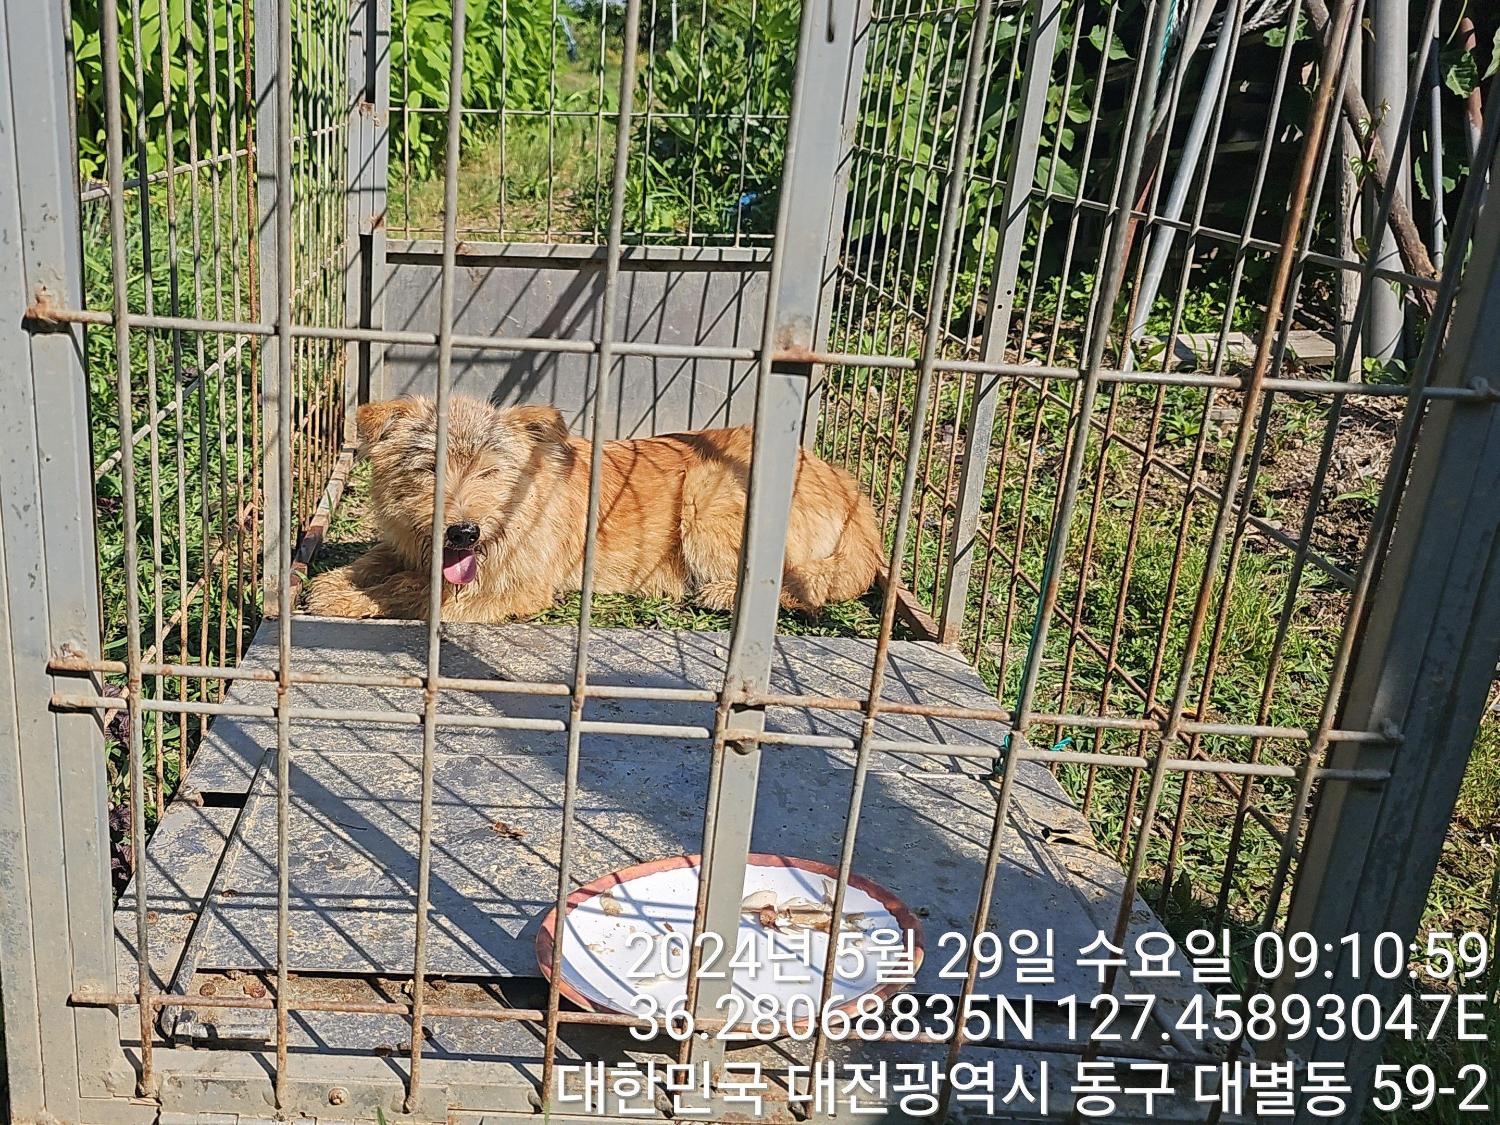 공고 번호가 대전-동구-2024-00147인 믹스견 동물 사진